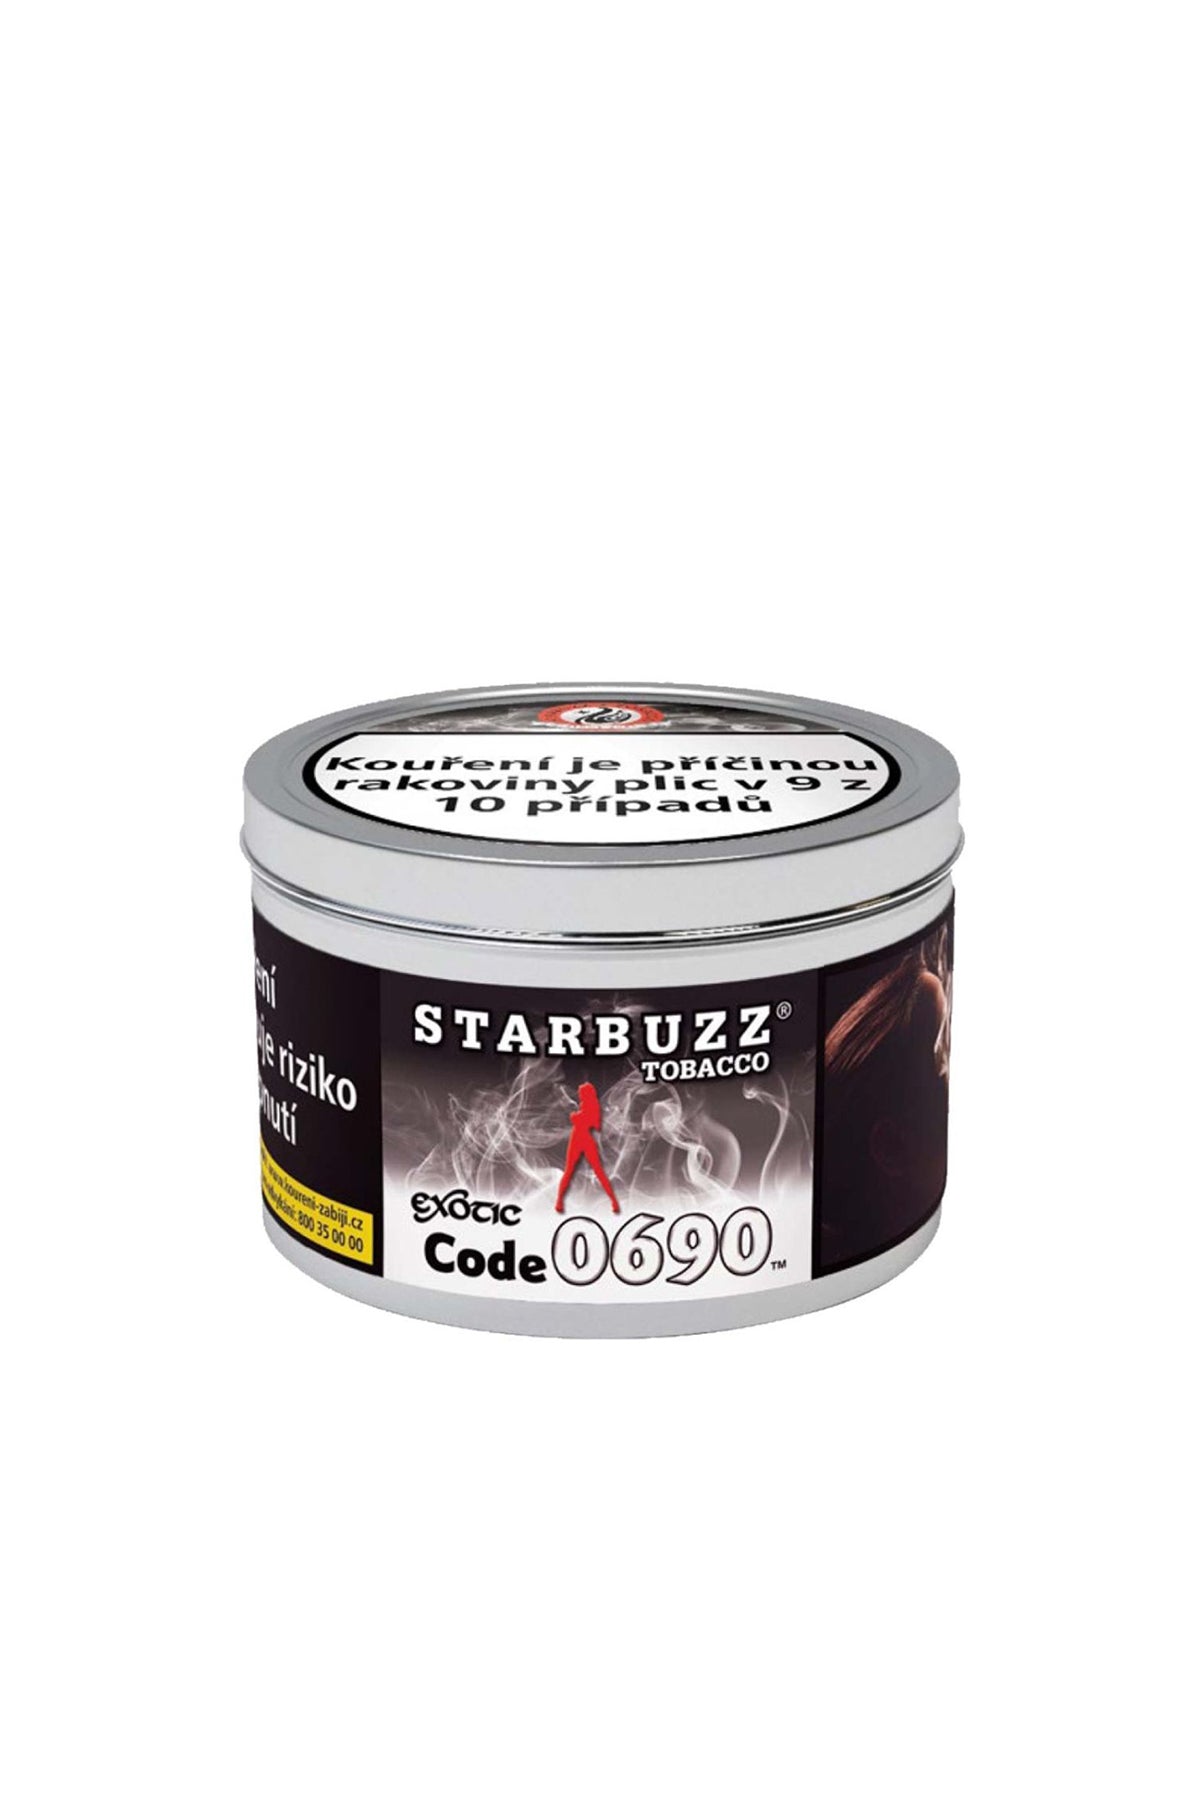 Tabák - Starbuzz 250g - Code 69